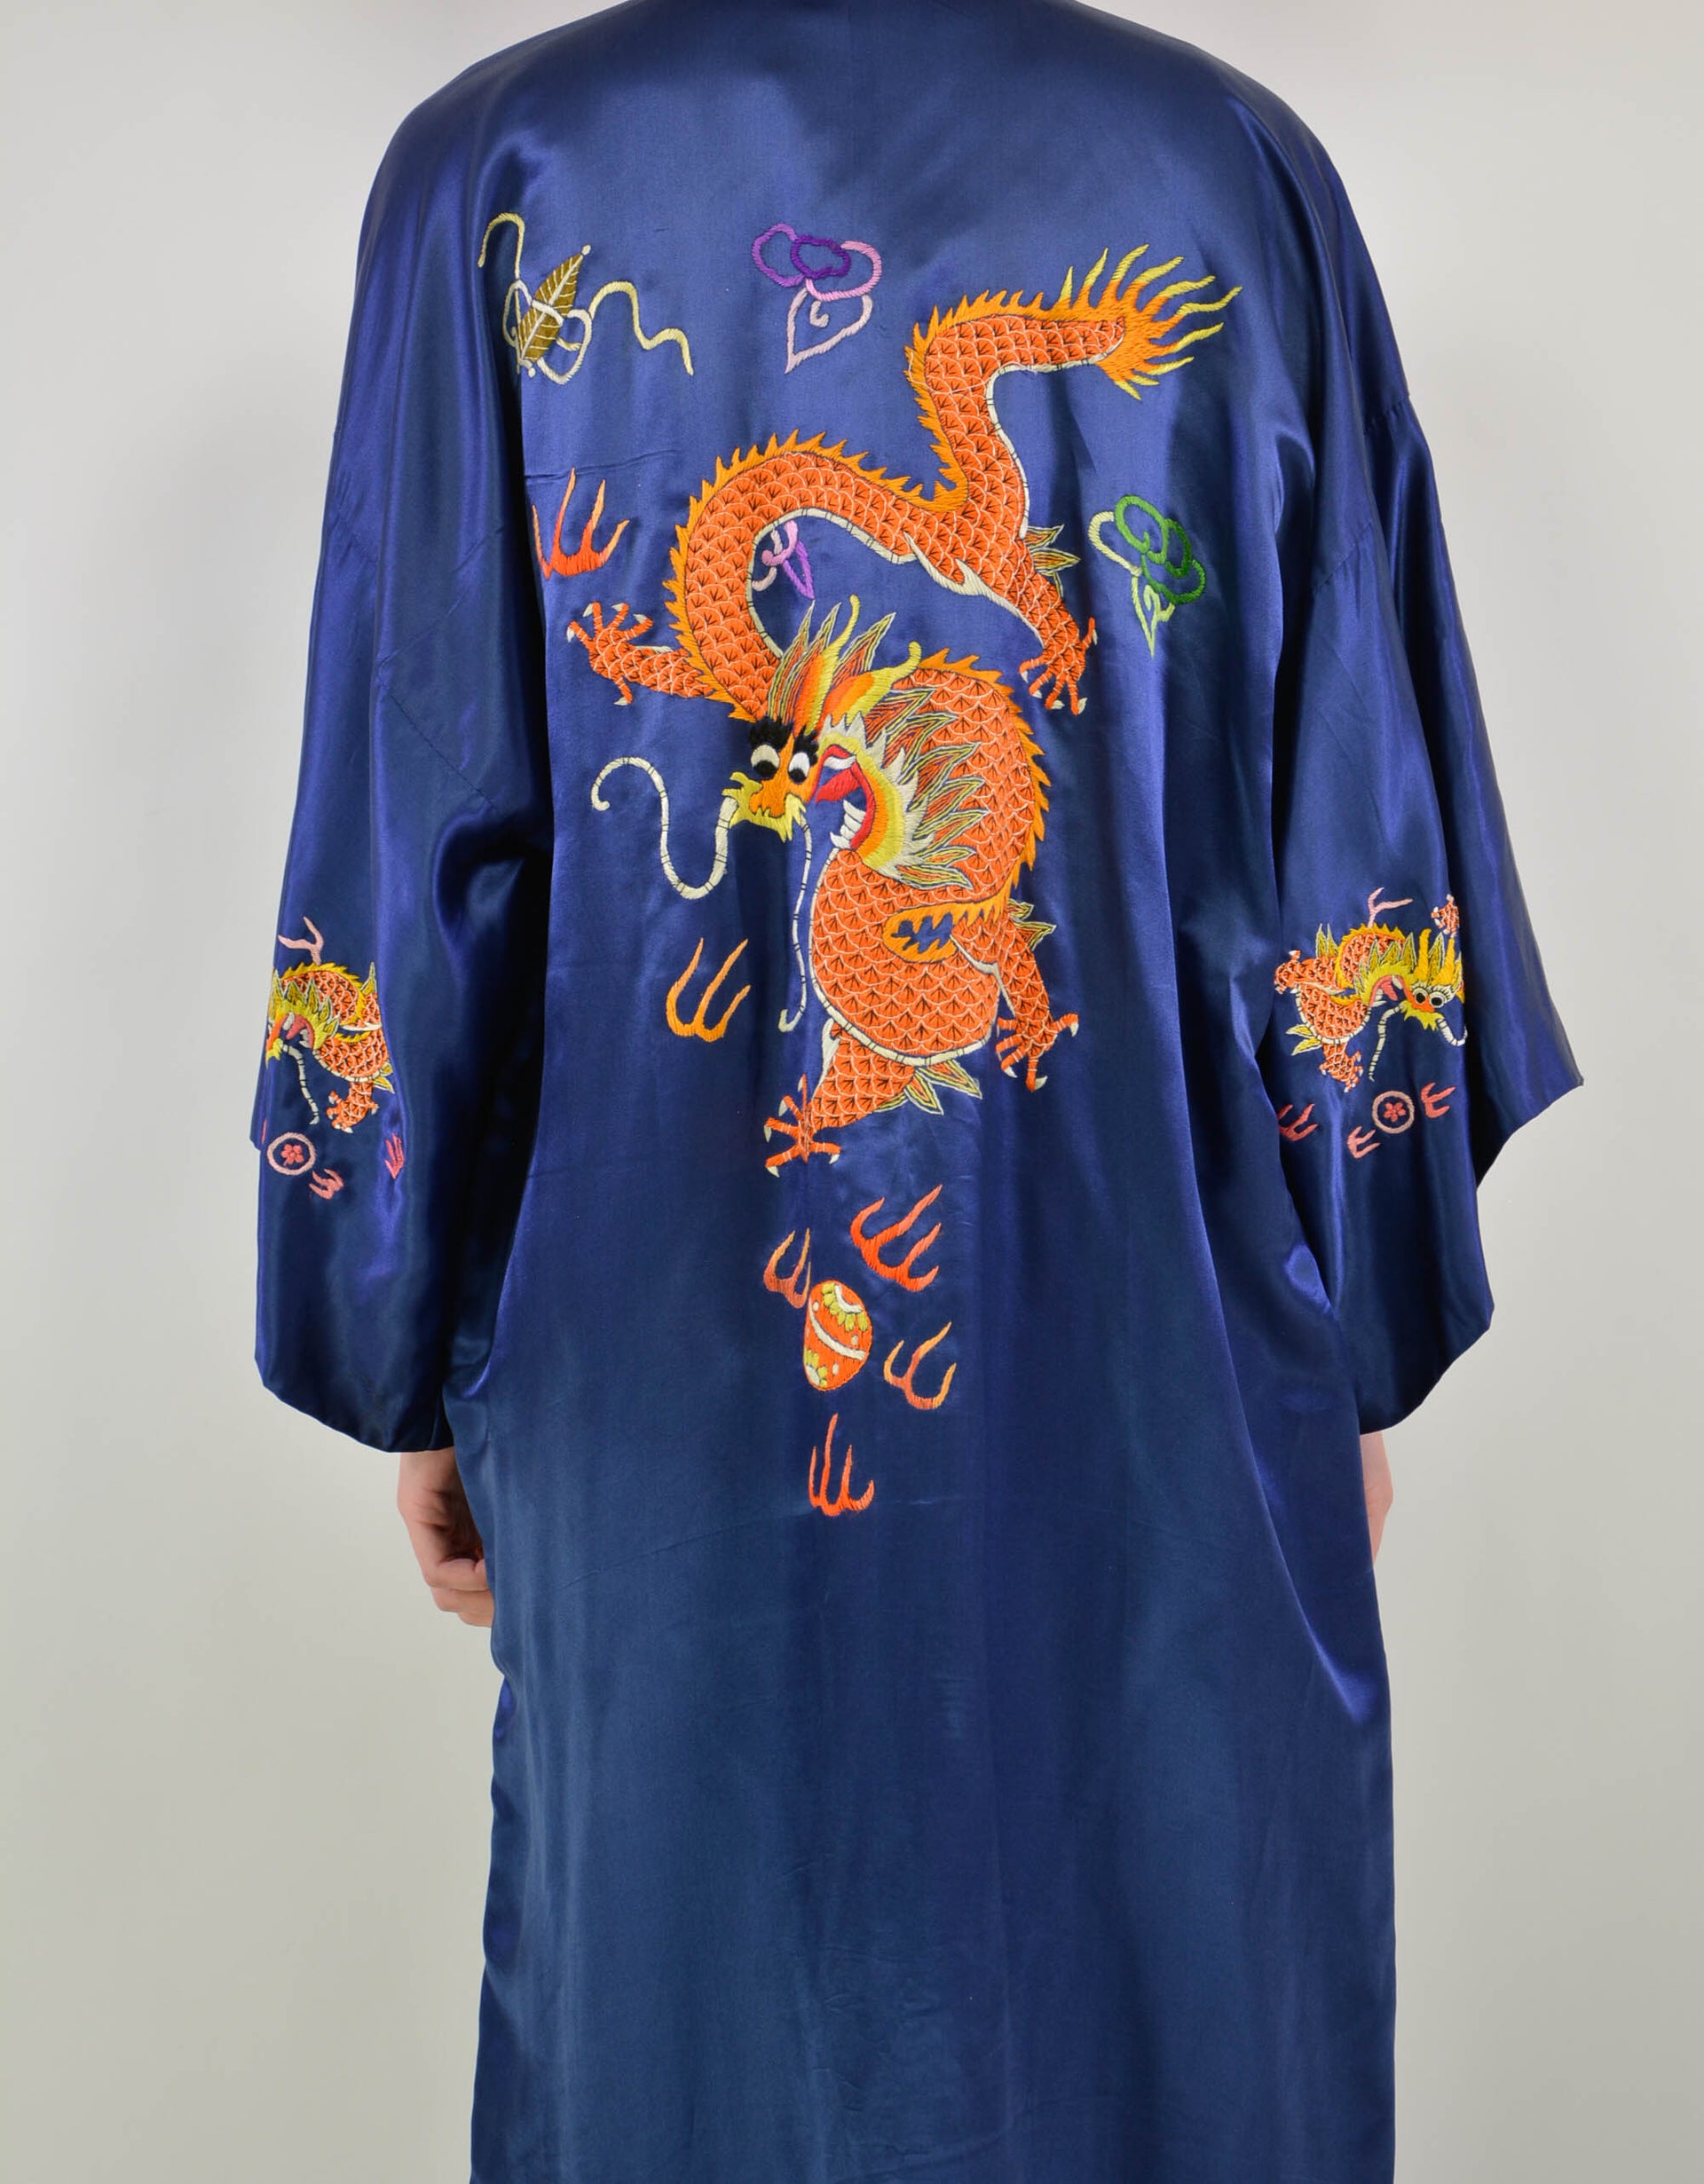 Kimono - PICKNWEIGHT - VINTAGE KILO STORE